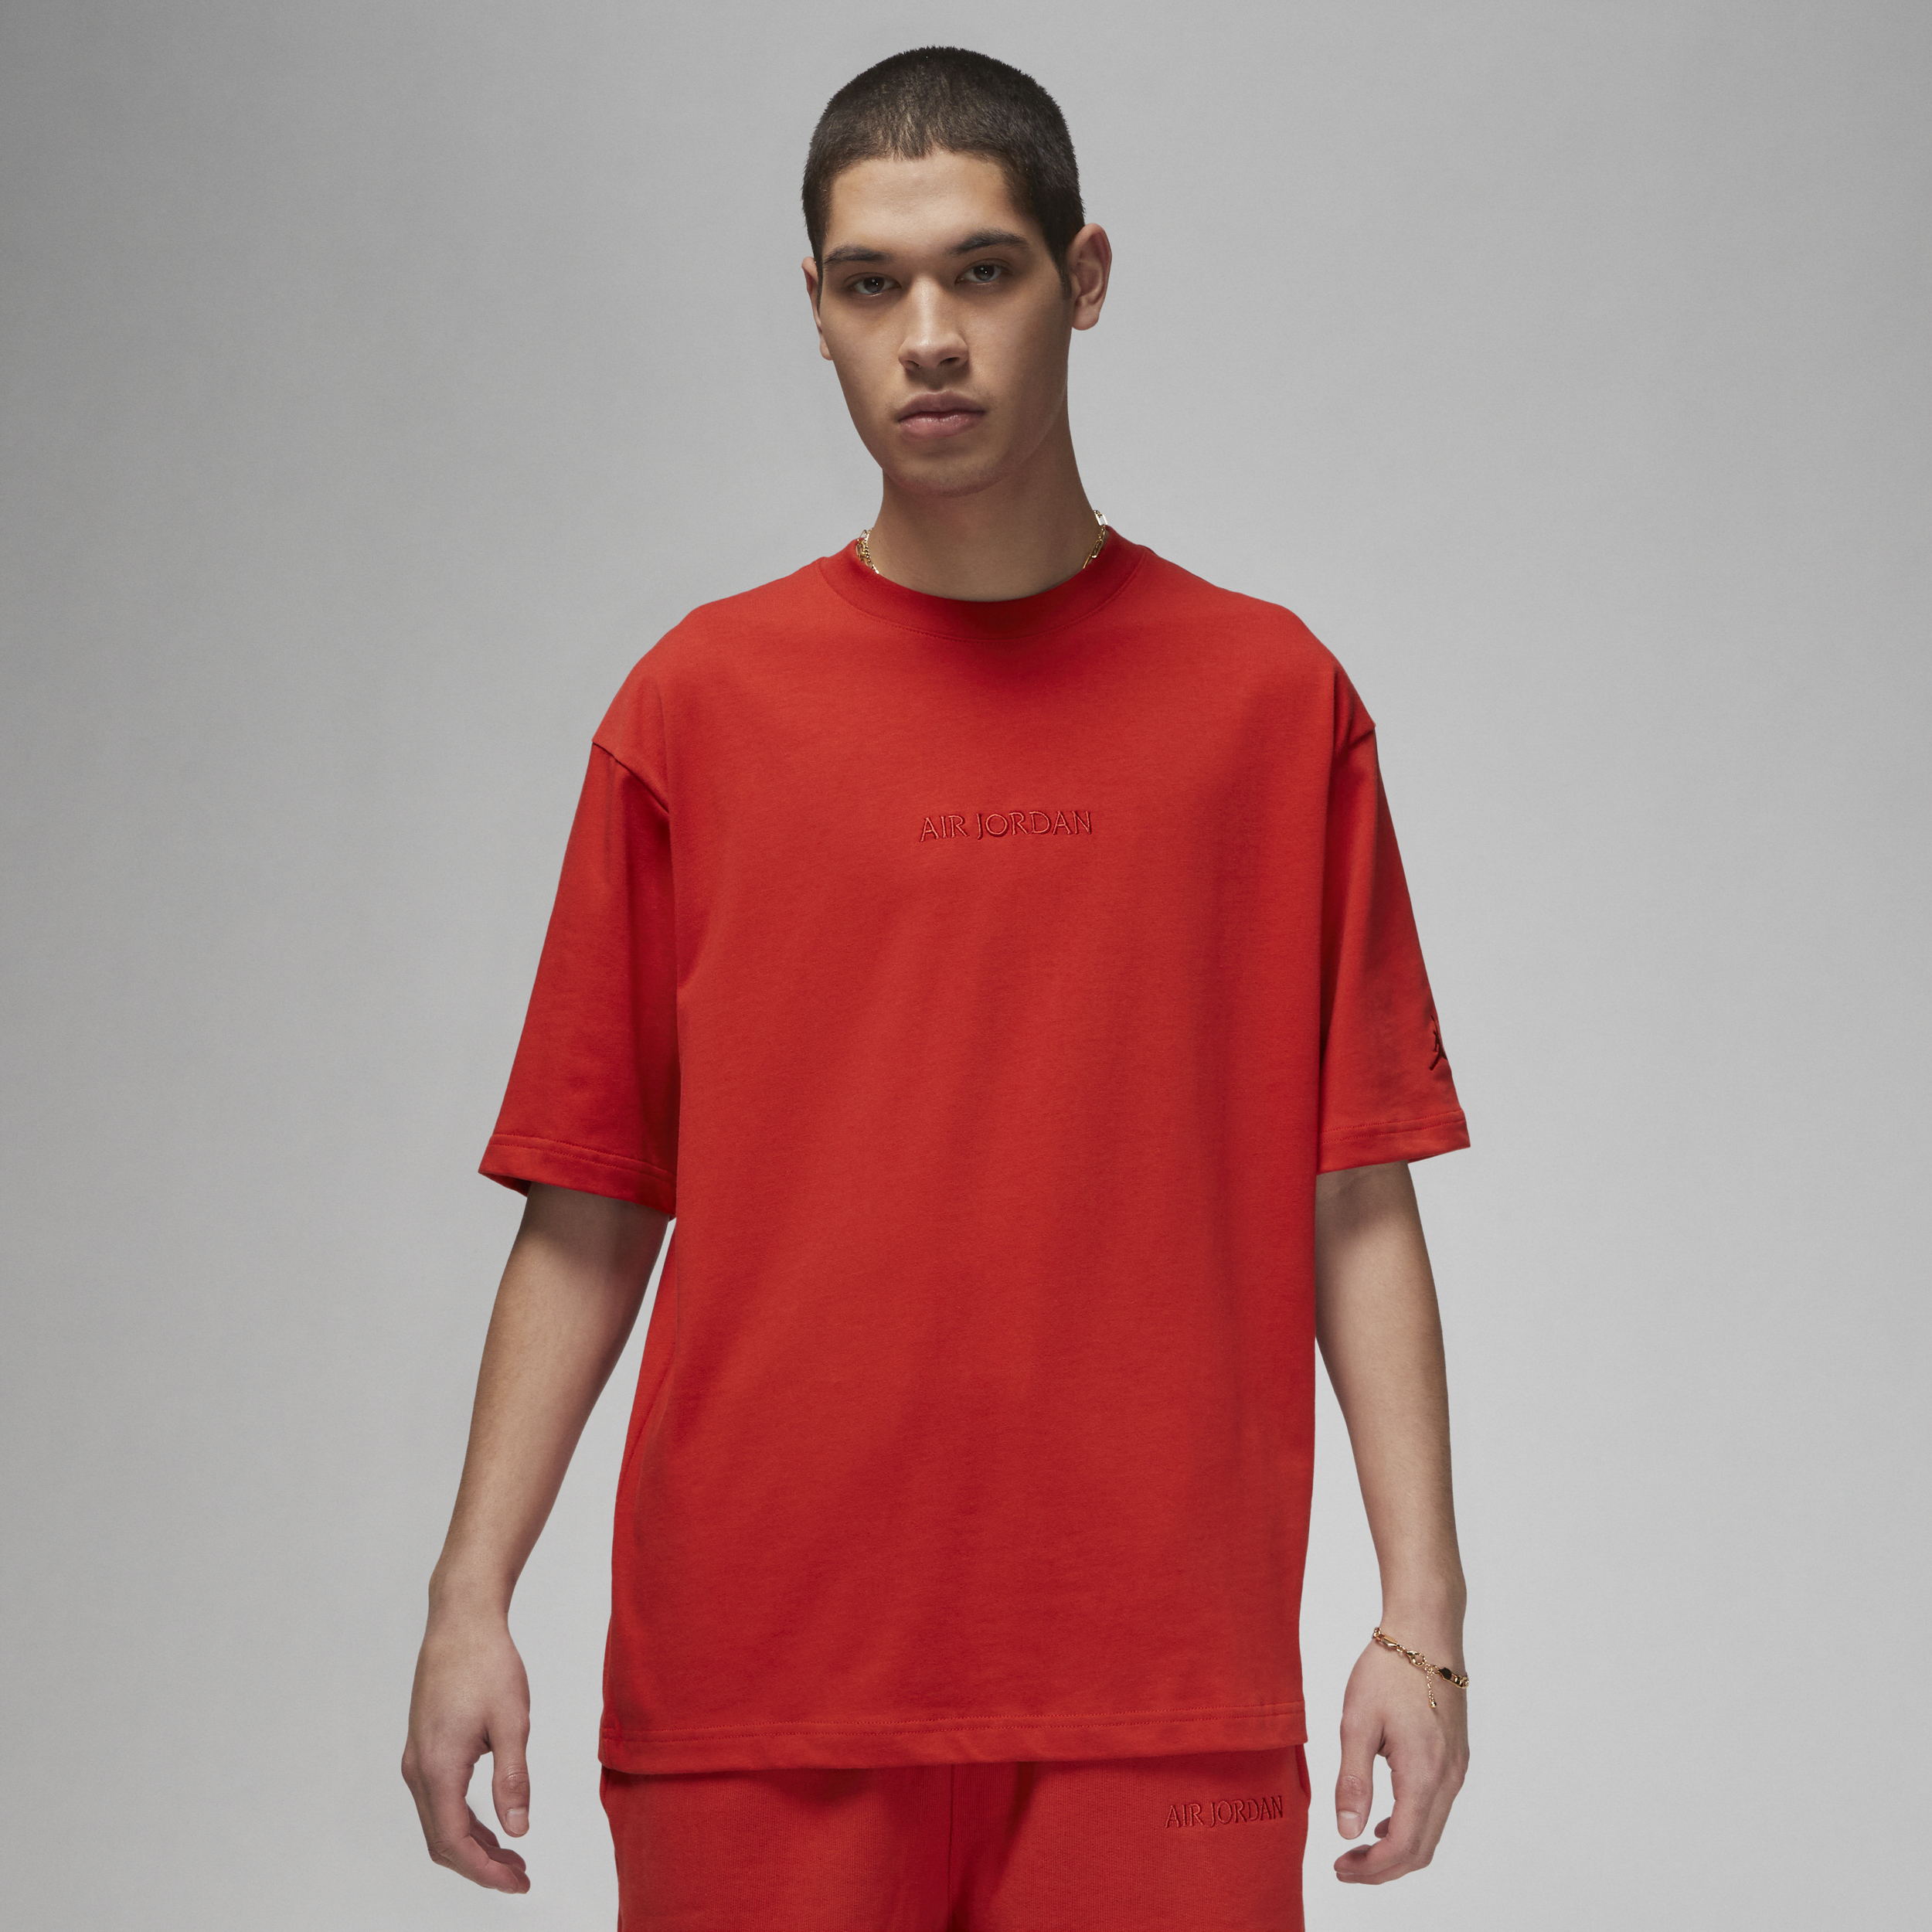 Air Jordan Wordmark Camiseta - Hombre - Rojo